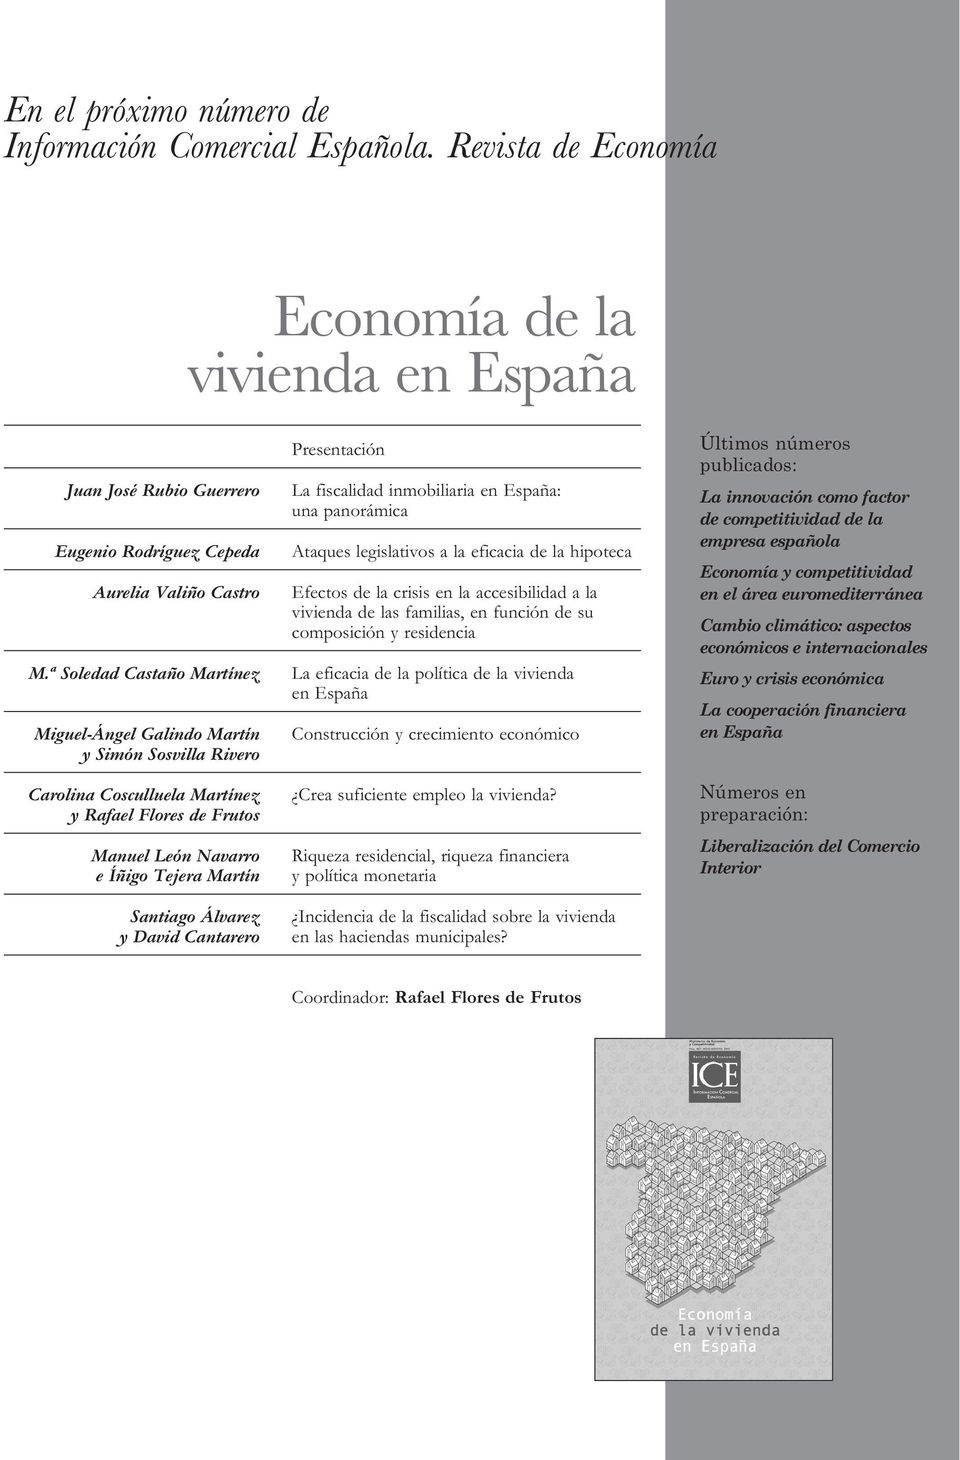 David Cantarero Presentación La fiscalidad inmobiliaria en España: una panorámica Ataques legislativos a la eficacia de la hipoteca Efectos de la crisis en la accesibilidad a la vivienda de las